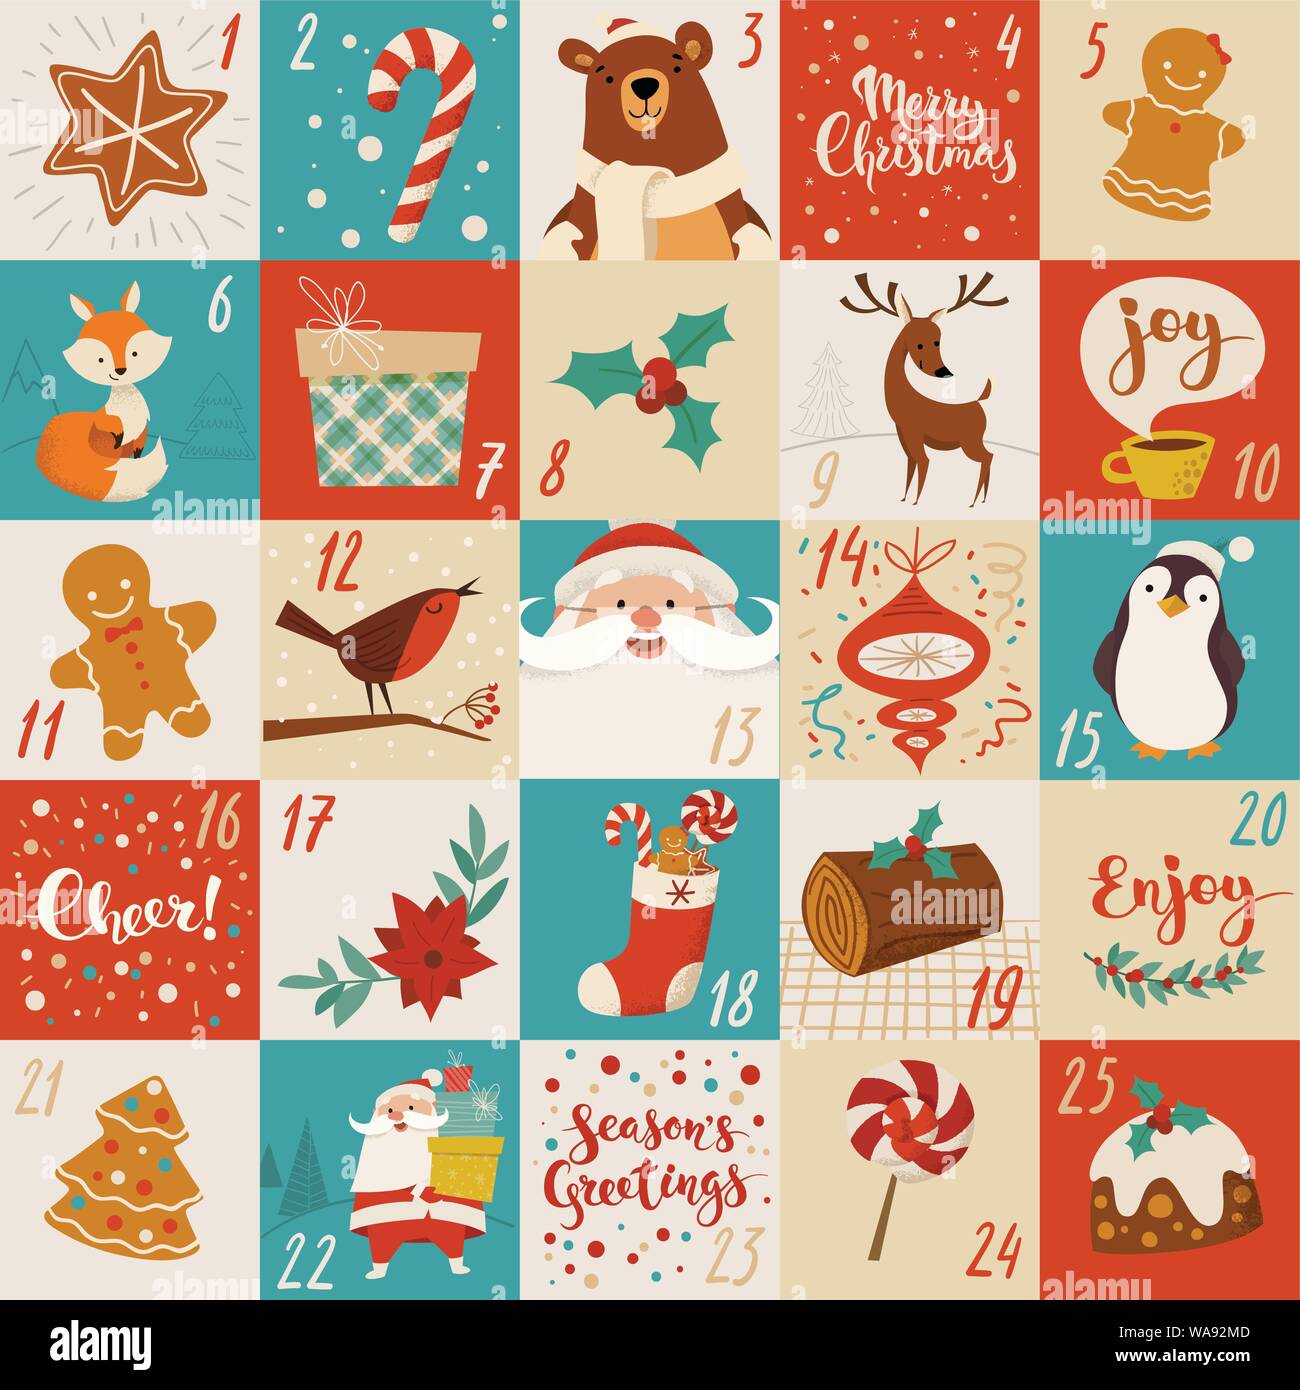 Weihnachten Advent Vektor Kalender Design Mit Urlaub Zeichen Essen Und Symbole Stock Vektorgrafik Alamy